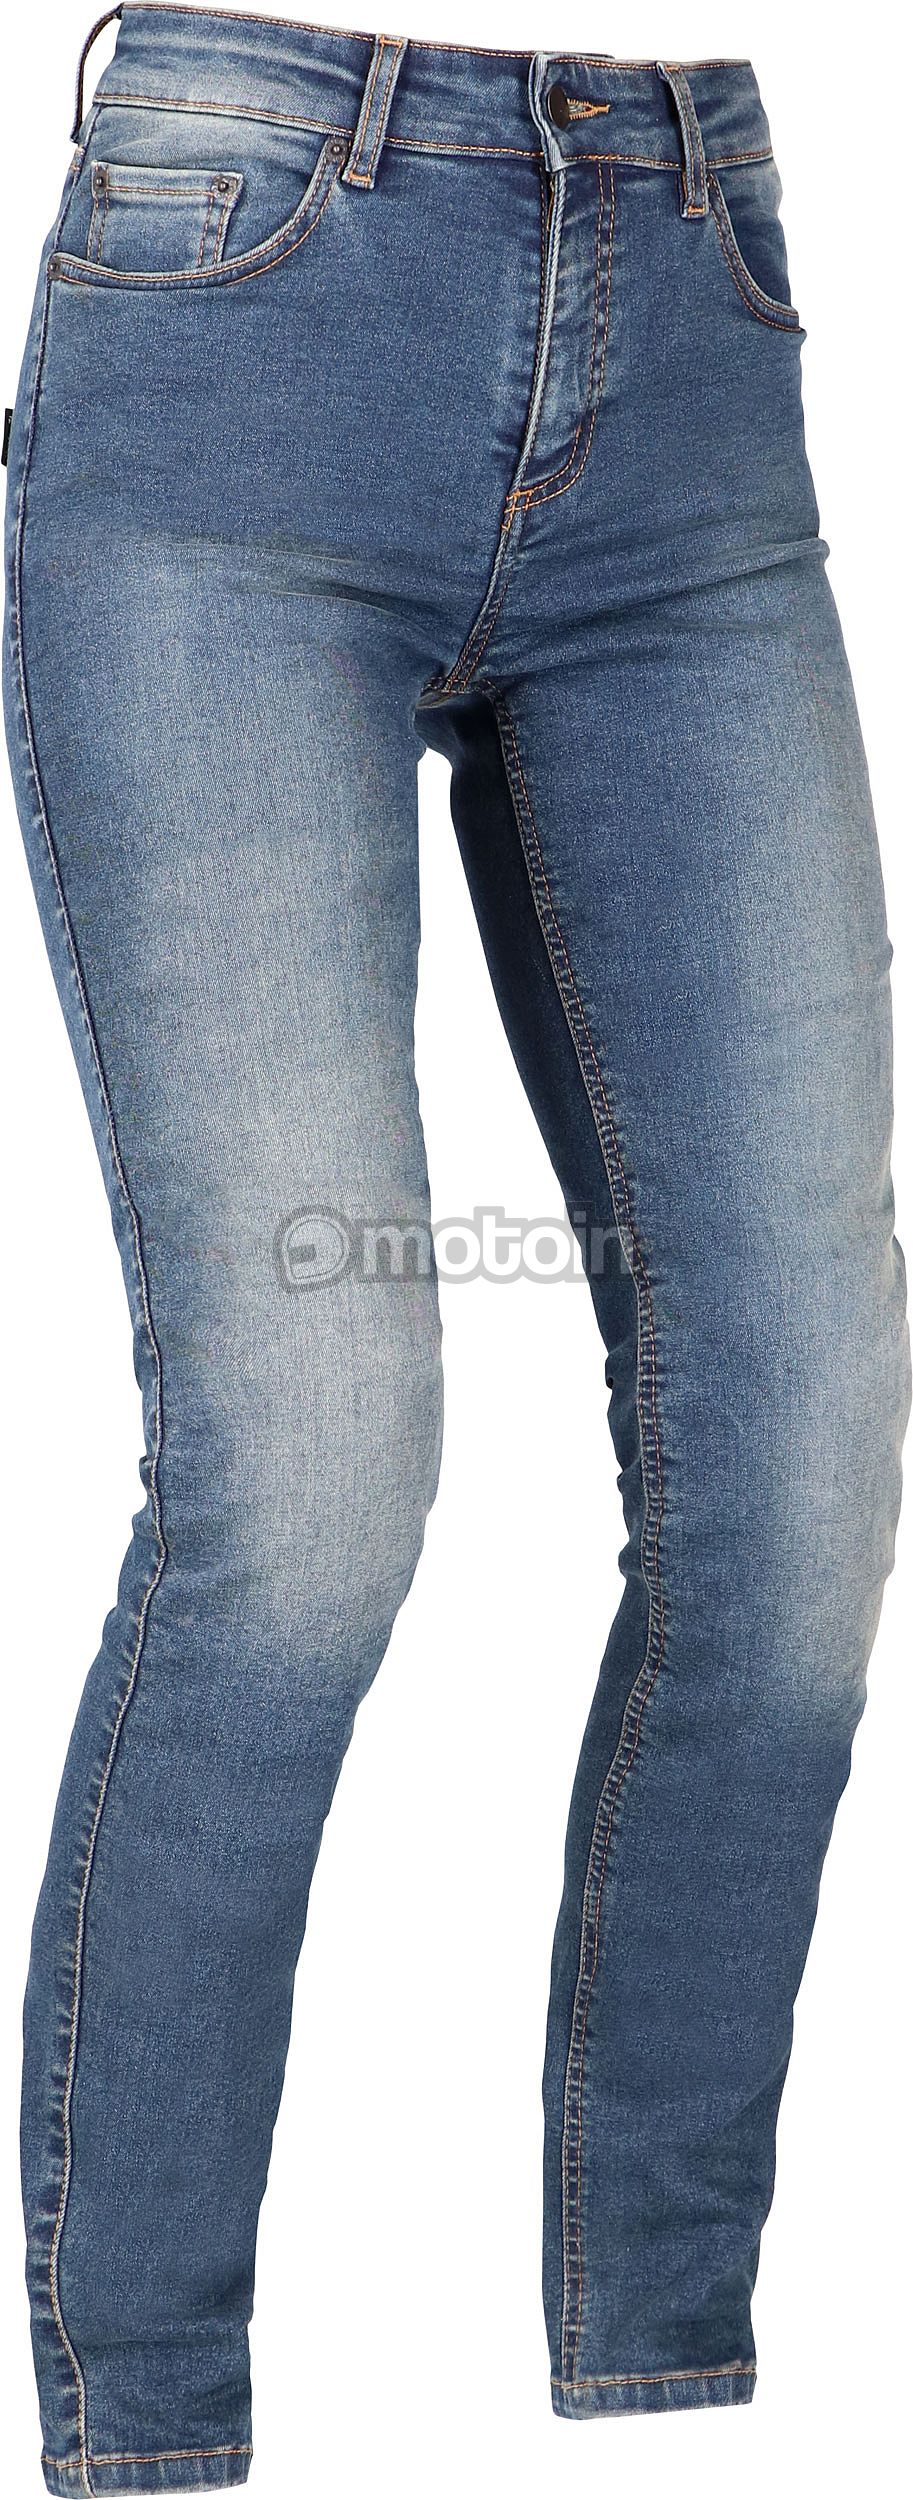 Richa Original 2 Slim-Fit, Jeans Damen